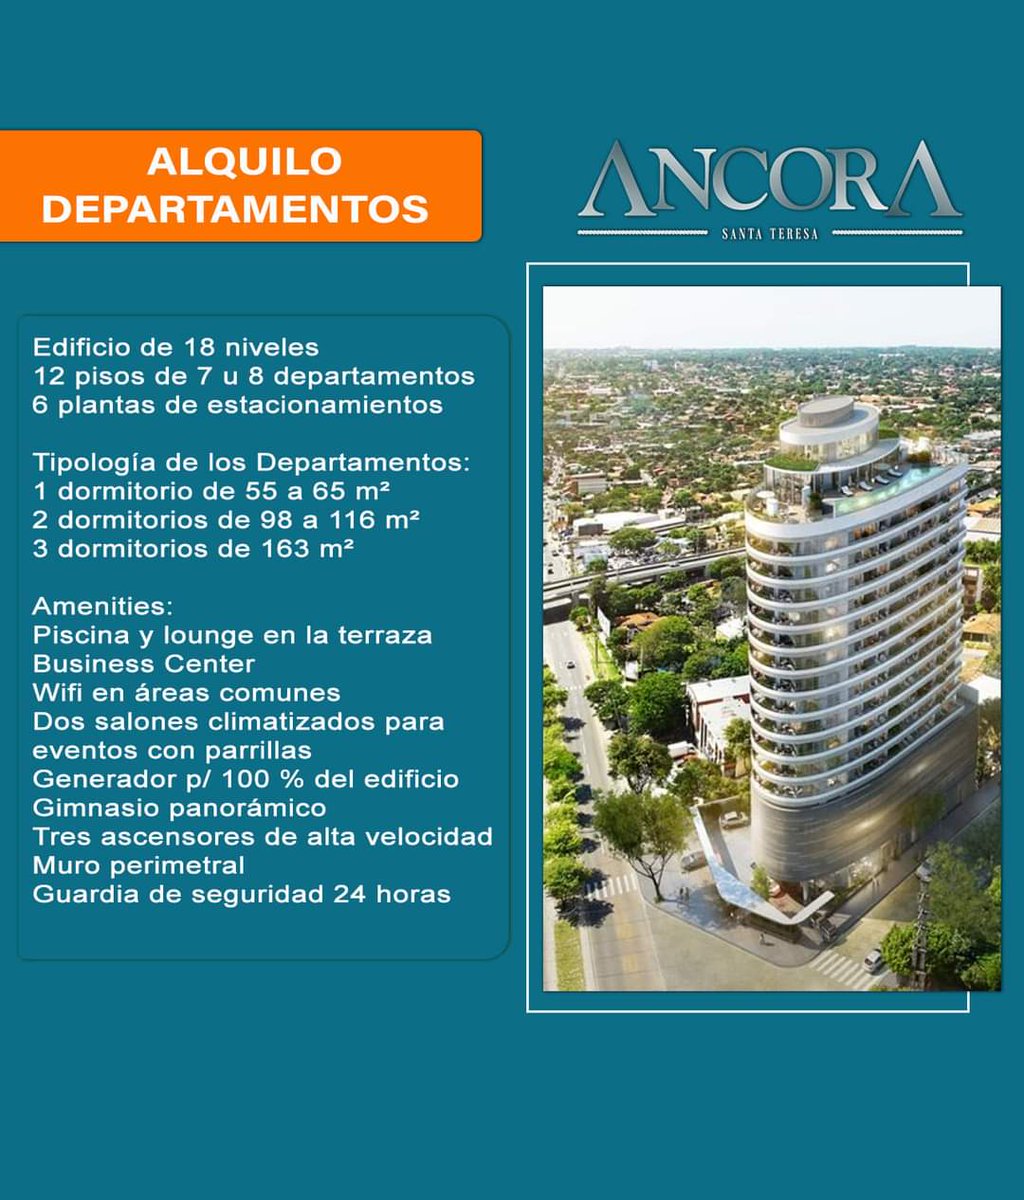 #puntoinmobiliario #experiencia #profesionalismo #confort #calidad #departamentos #asunción #barrioherrera #ancora